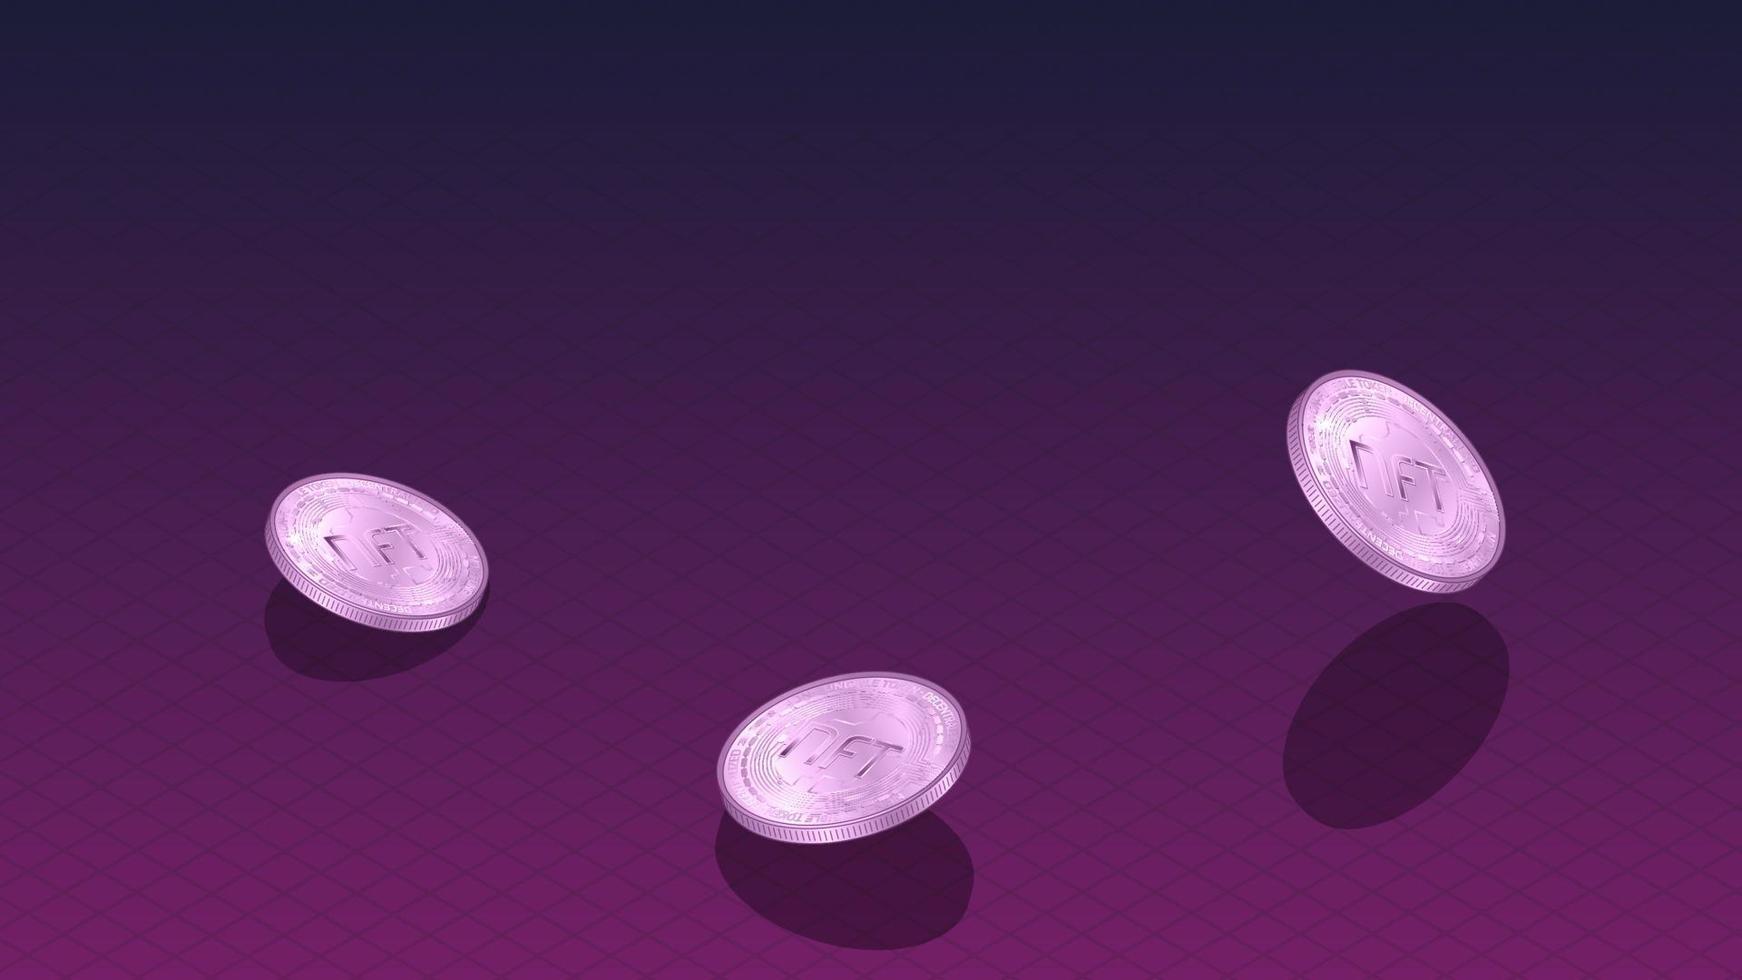 nft icke svampbar tokens baner med isometrisk faller mynt och kopia Plats på mörk röd. betala för unik samlar i spel eller konst. vektor illustration.